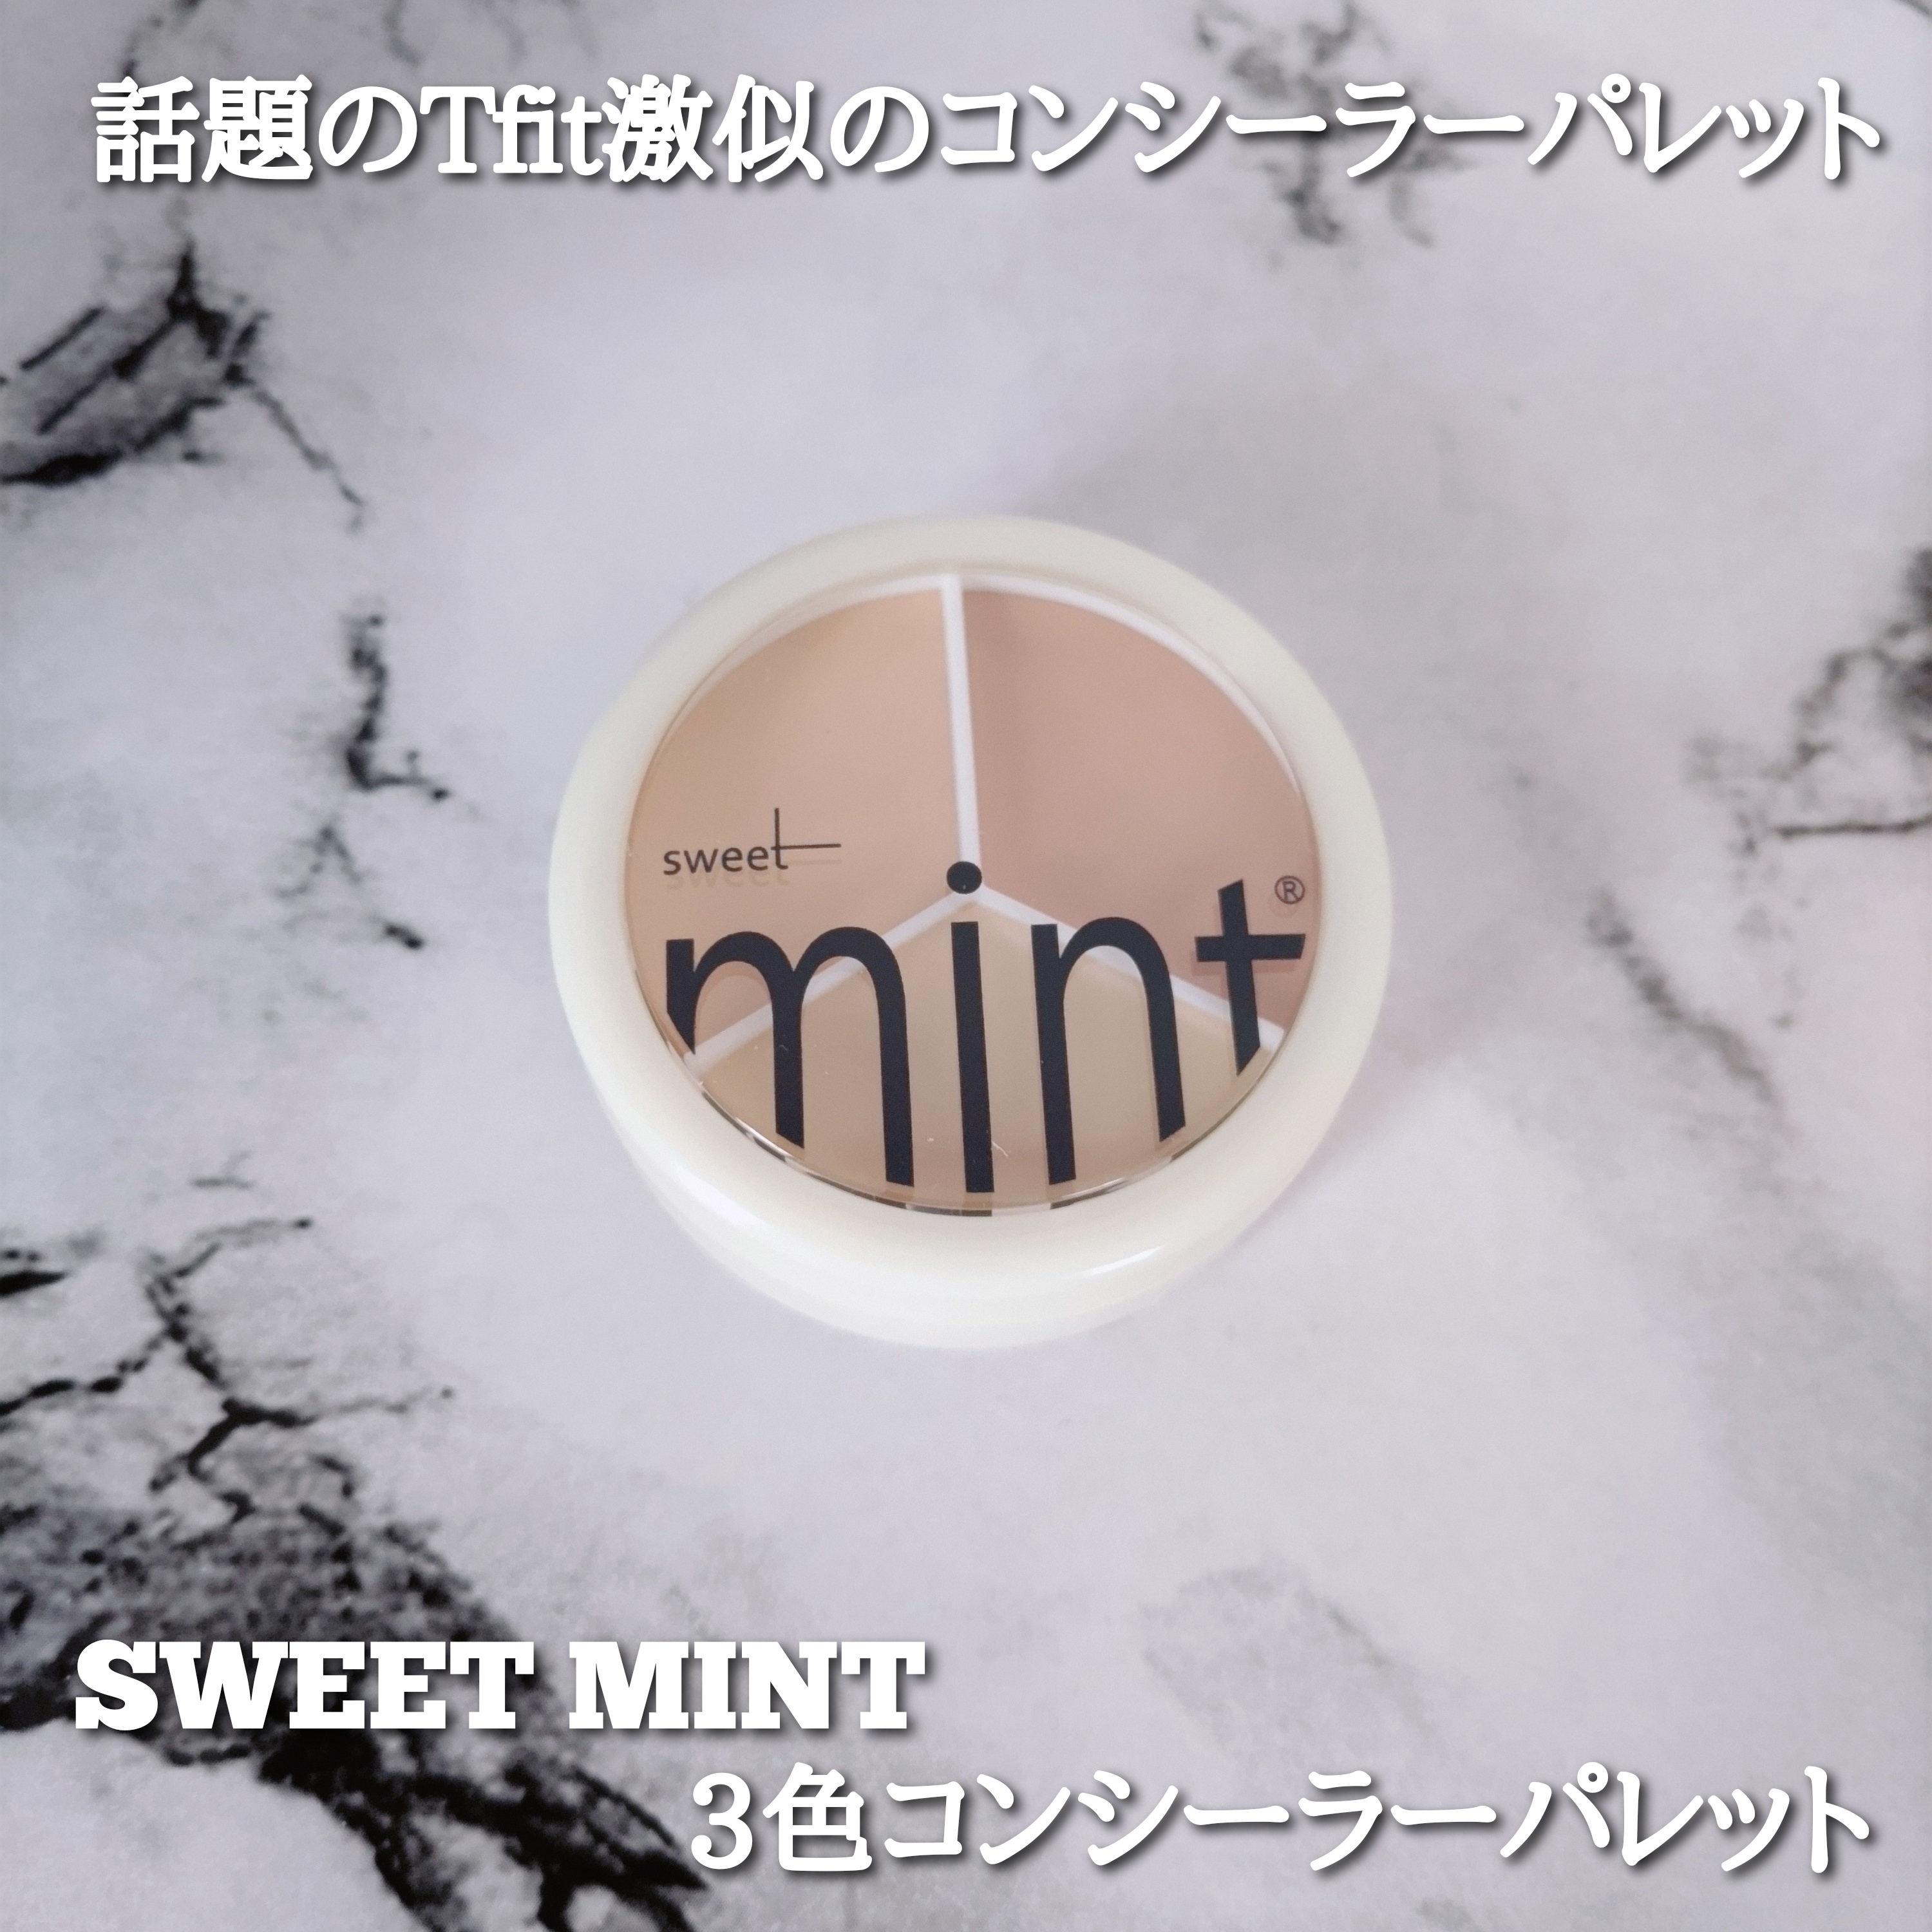 SWEET MINT 3色コンシーラーパレットの良い点・メリットに関するYuKaRi♡さんの口コミ画像1